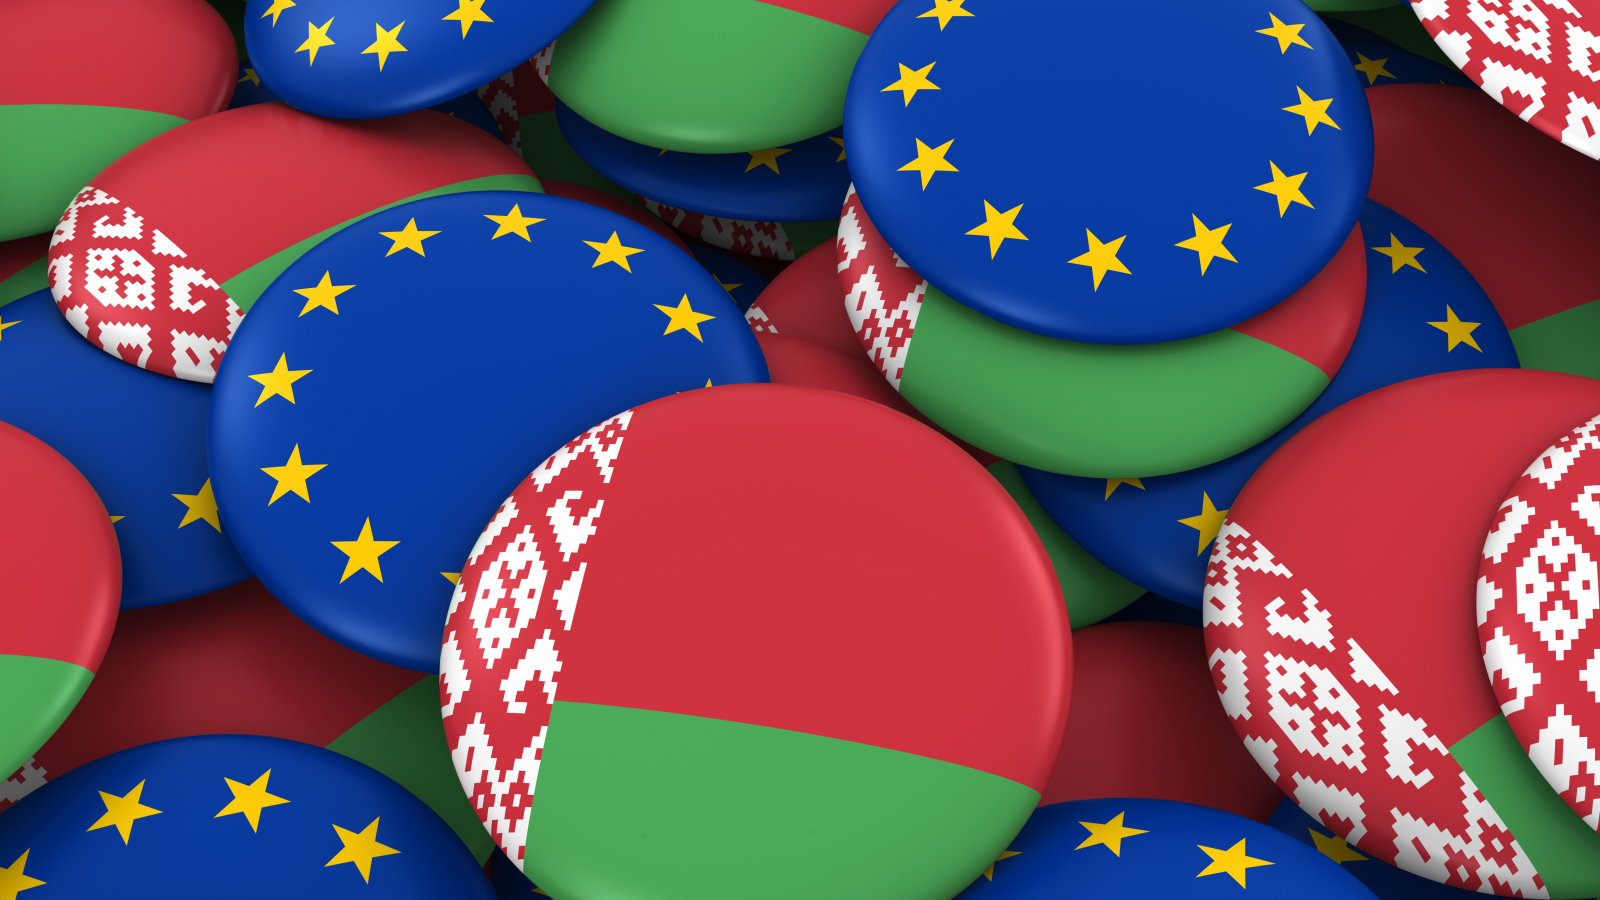 Η ΕΕ θα επιβάλει κυρώσεις στη Λευκορωσία άμεσα – Για την Τουρκία από Σεπτέμβριο οι… συζητήσεις